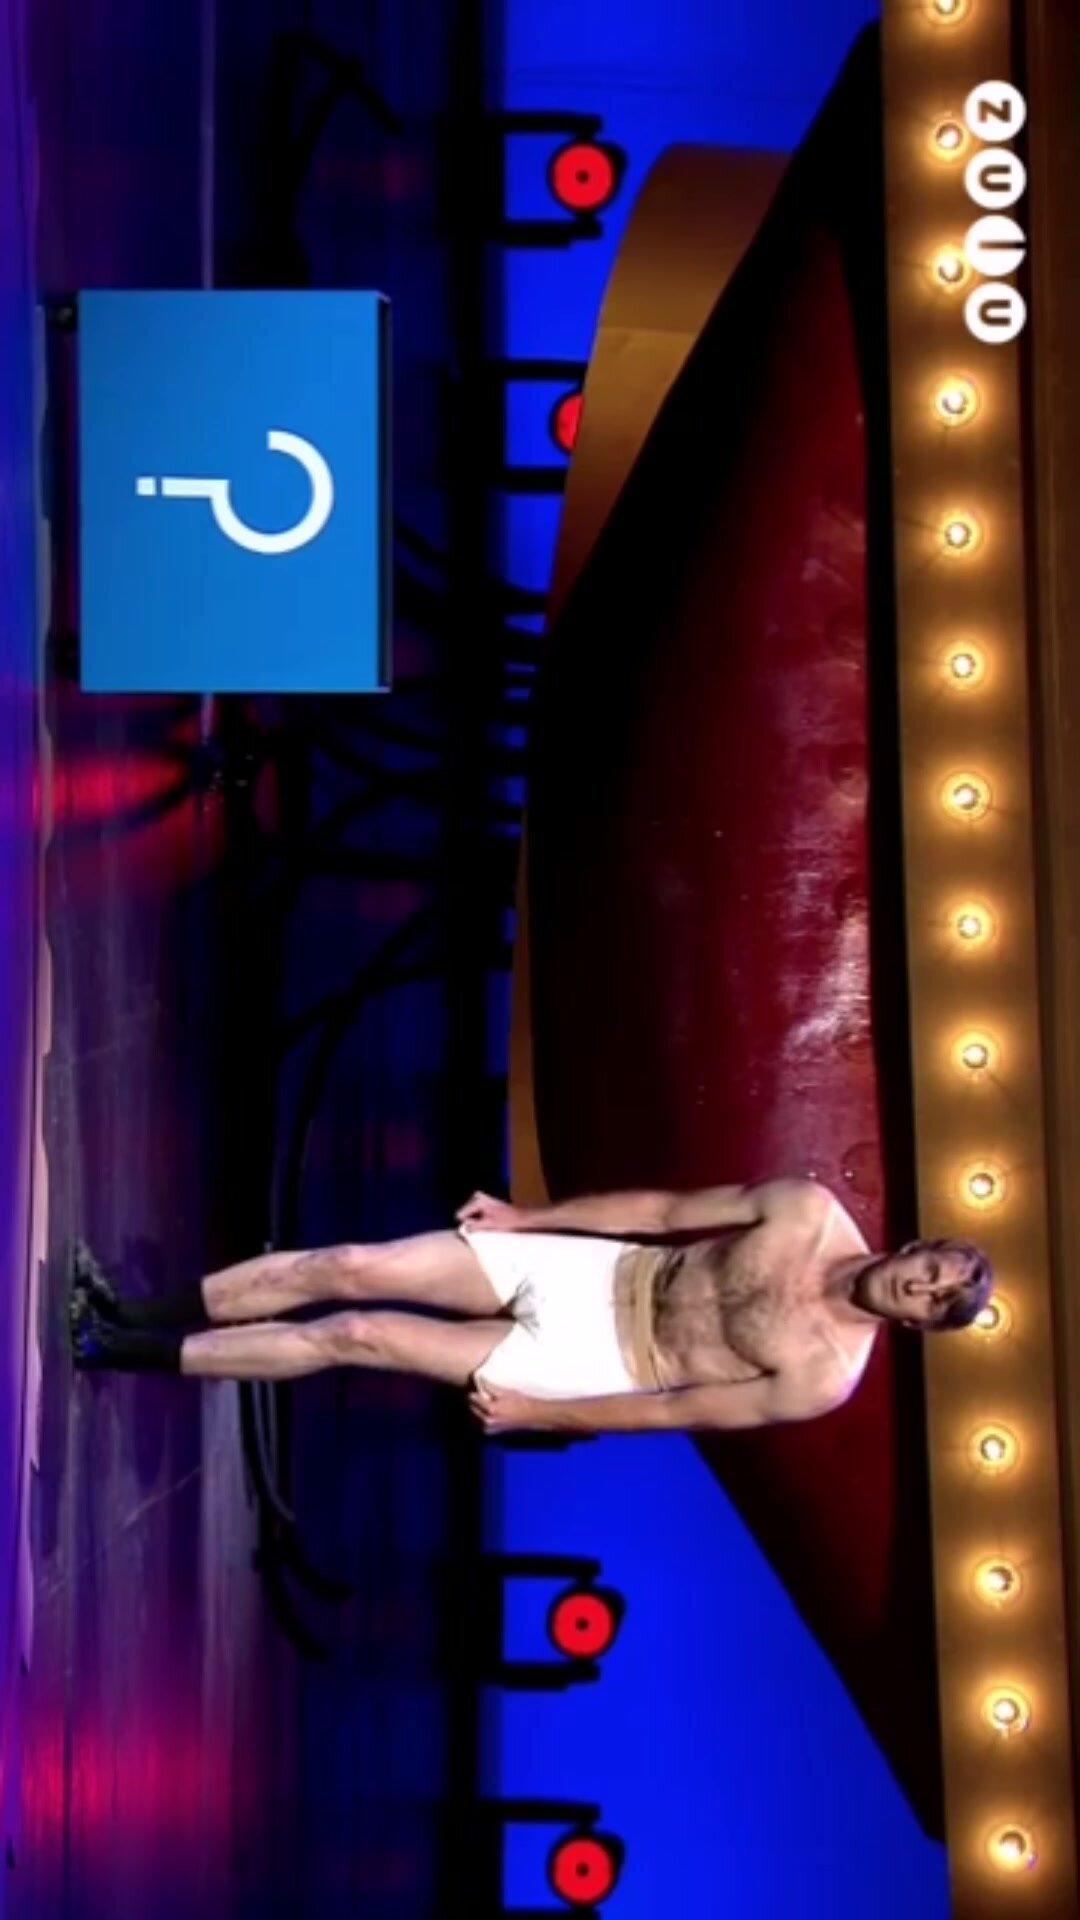 Naked comedian on TV